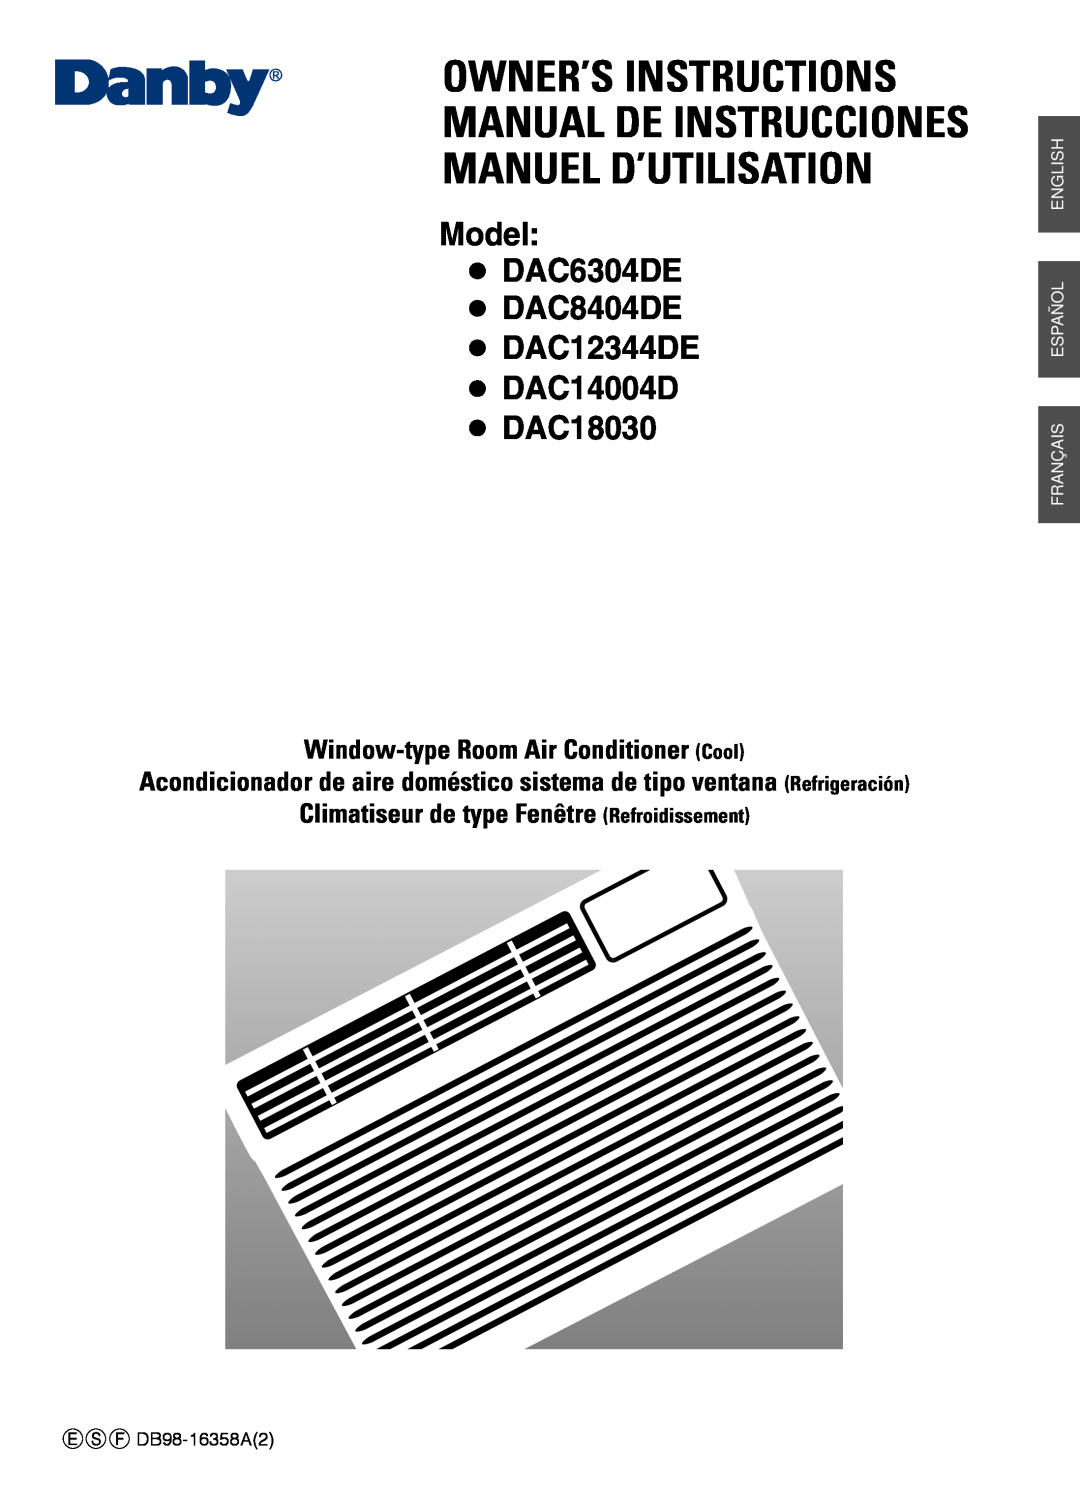 Danby DAC12344DE manuel dutilisation Owner’S Instructions Manual De Instrucciones, Manuel D’Utilisation, DAC18030 